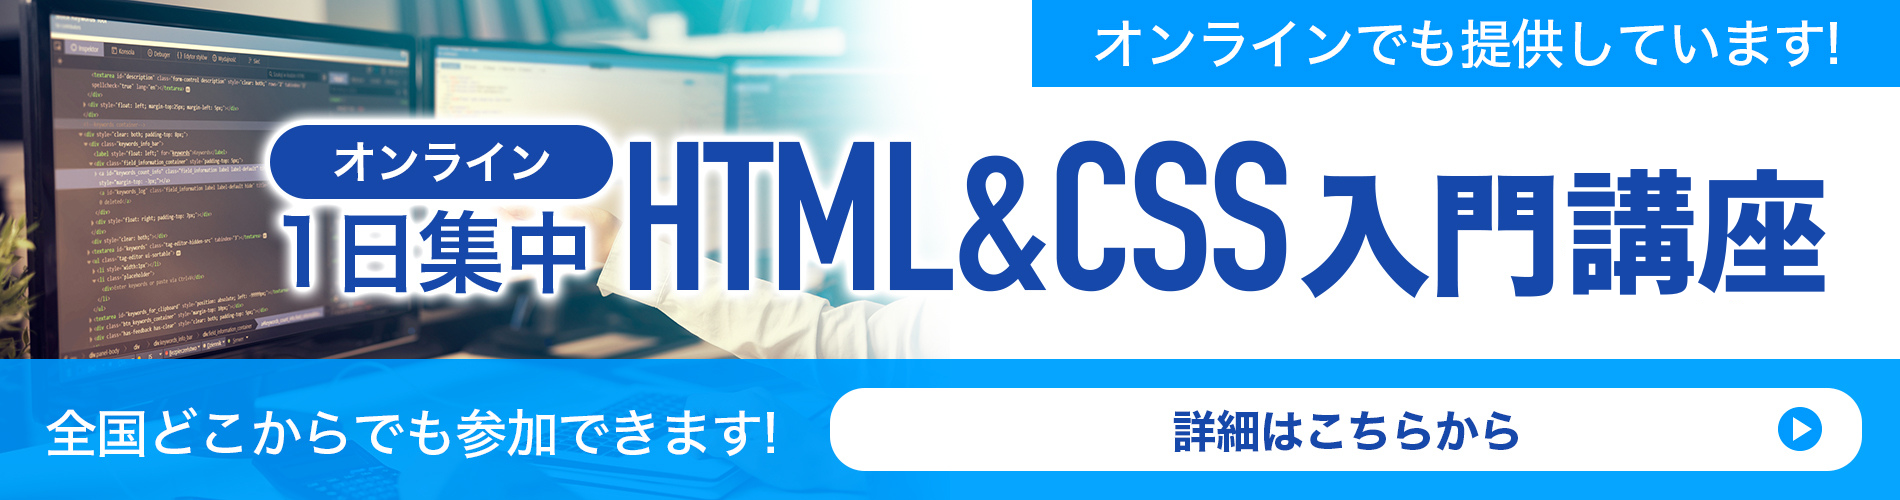 1日集中HTML&CSS入門セミナー